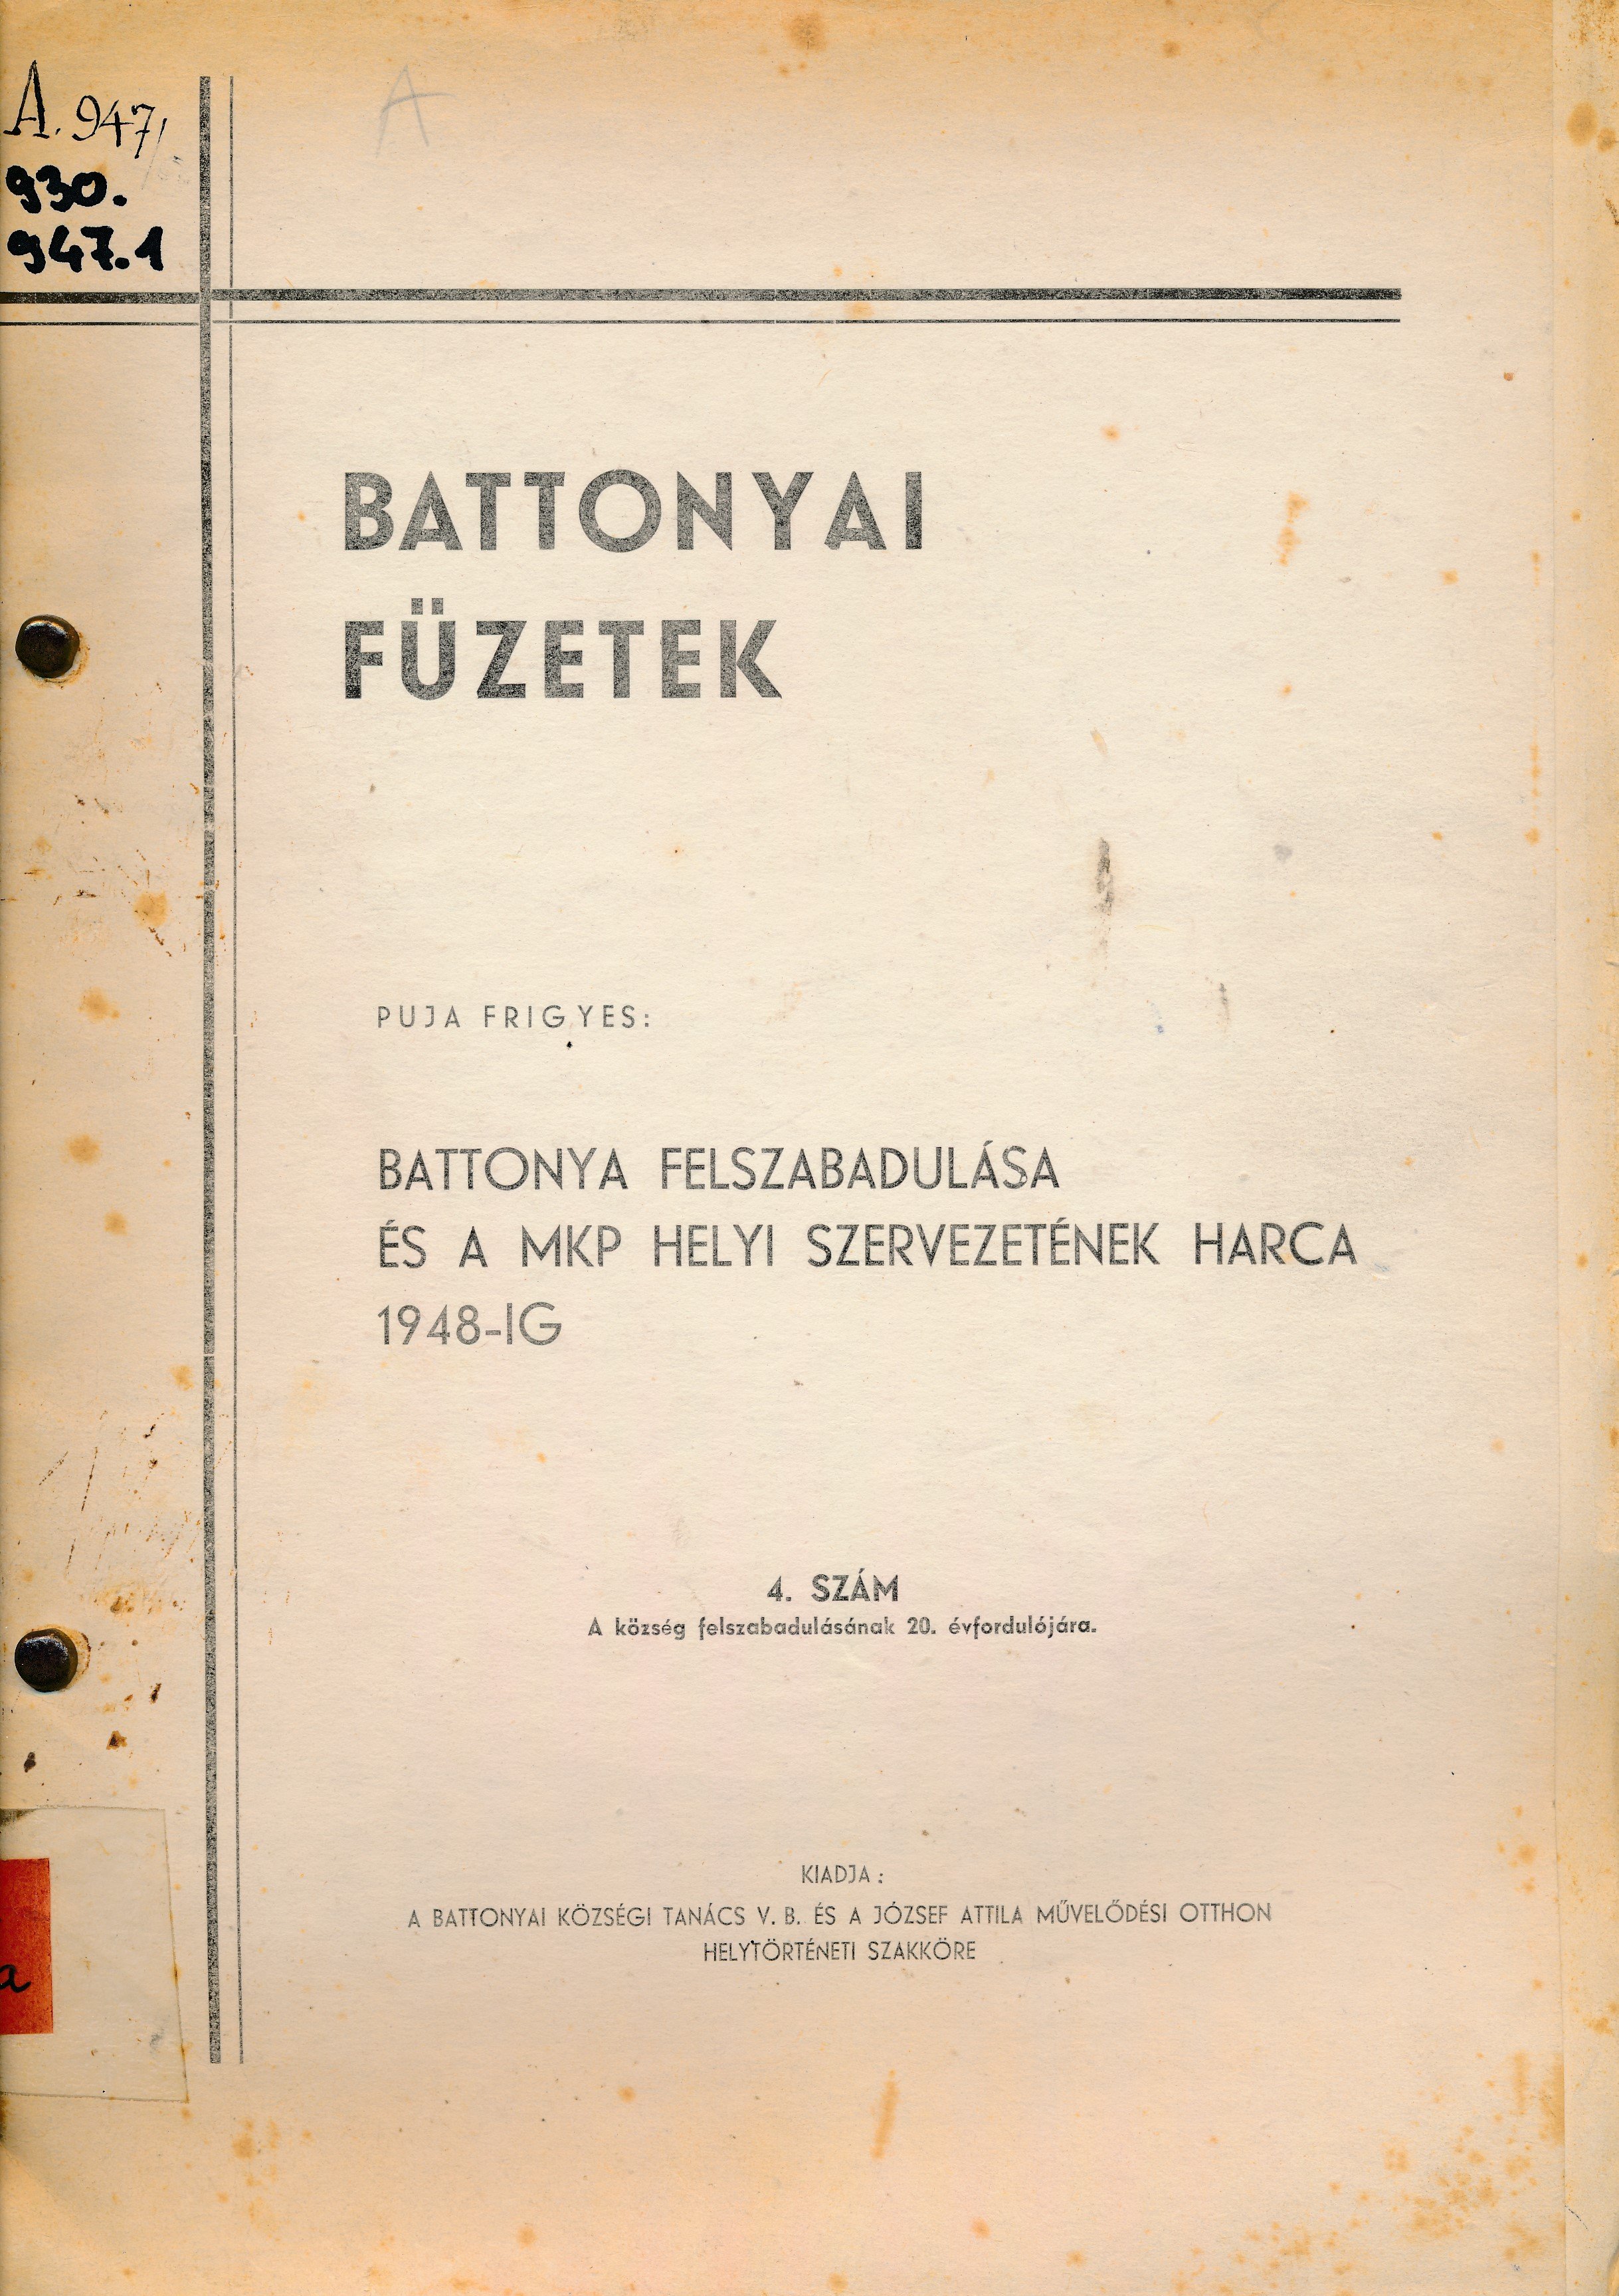 Battonyai füzetek 4. szám Battonya felszabadulása és a MKP helyi szervezetének harca 1948 - ig (Erkel Ferenc Múzeum és Könyvtár, Gyula CC BY-NC-SA)